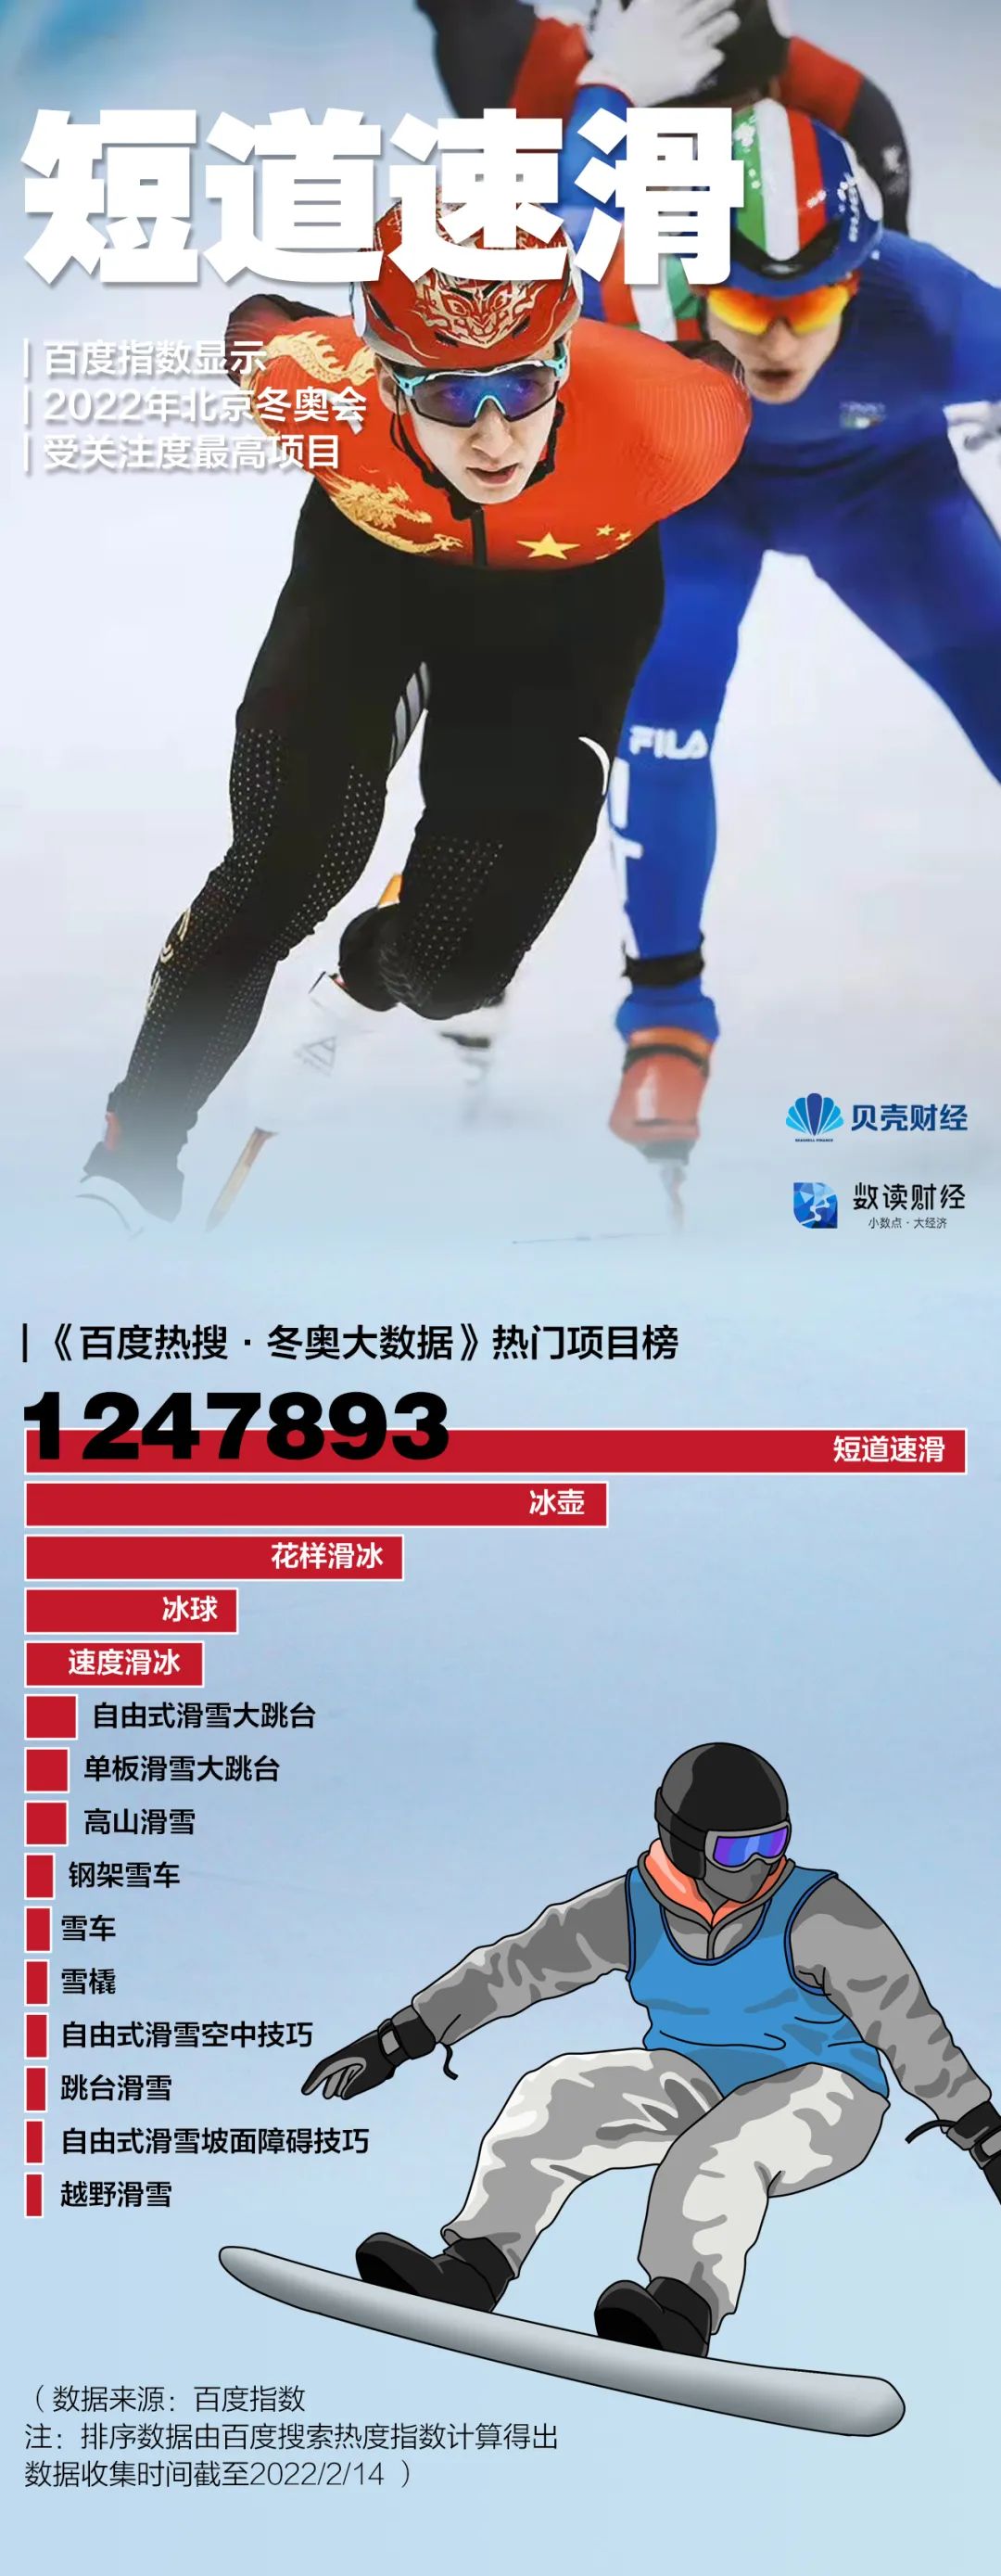 北京冬奥会全球收视率预计超20亿插图2